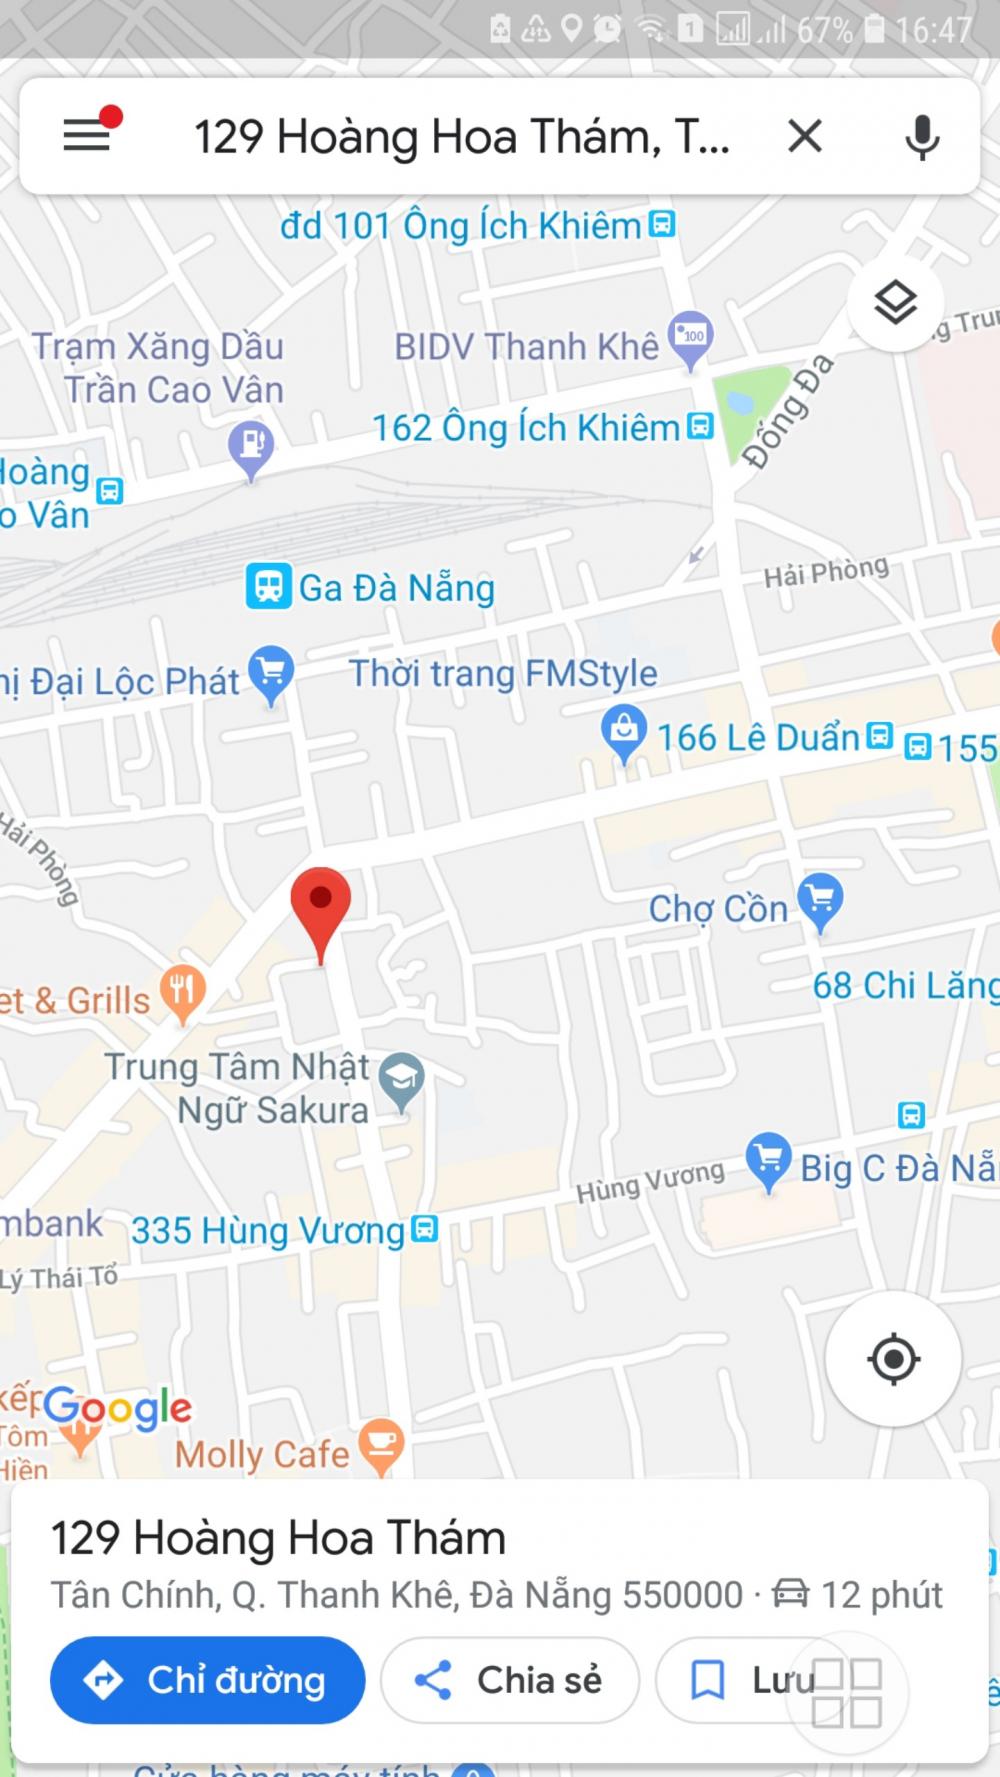 Bán nhà mặt tiền phố Hoàng Hoa Thám, Đà Nẵng, diện tích 54.5m2, giá 9,3 tỷ. Liên hệ: 0905.932.500